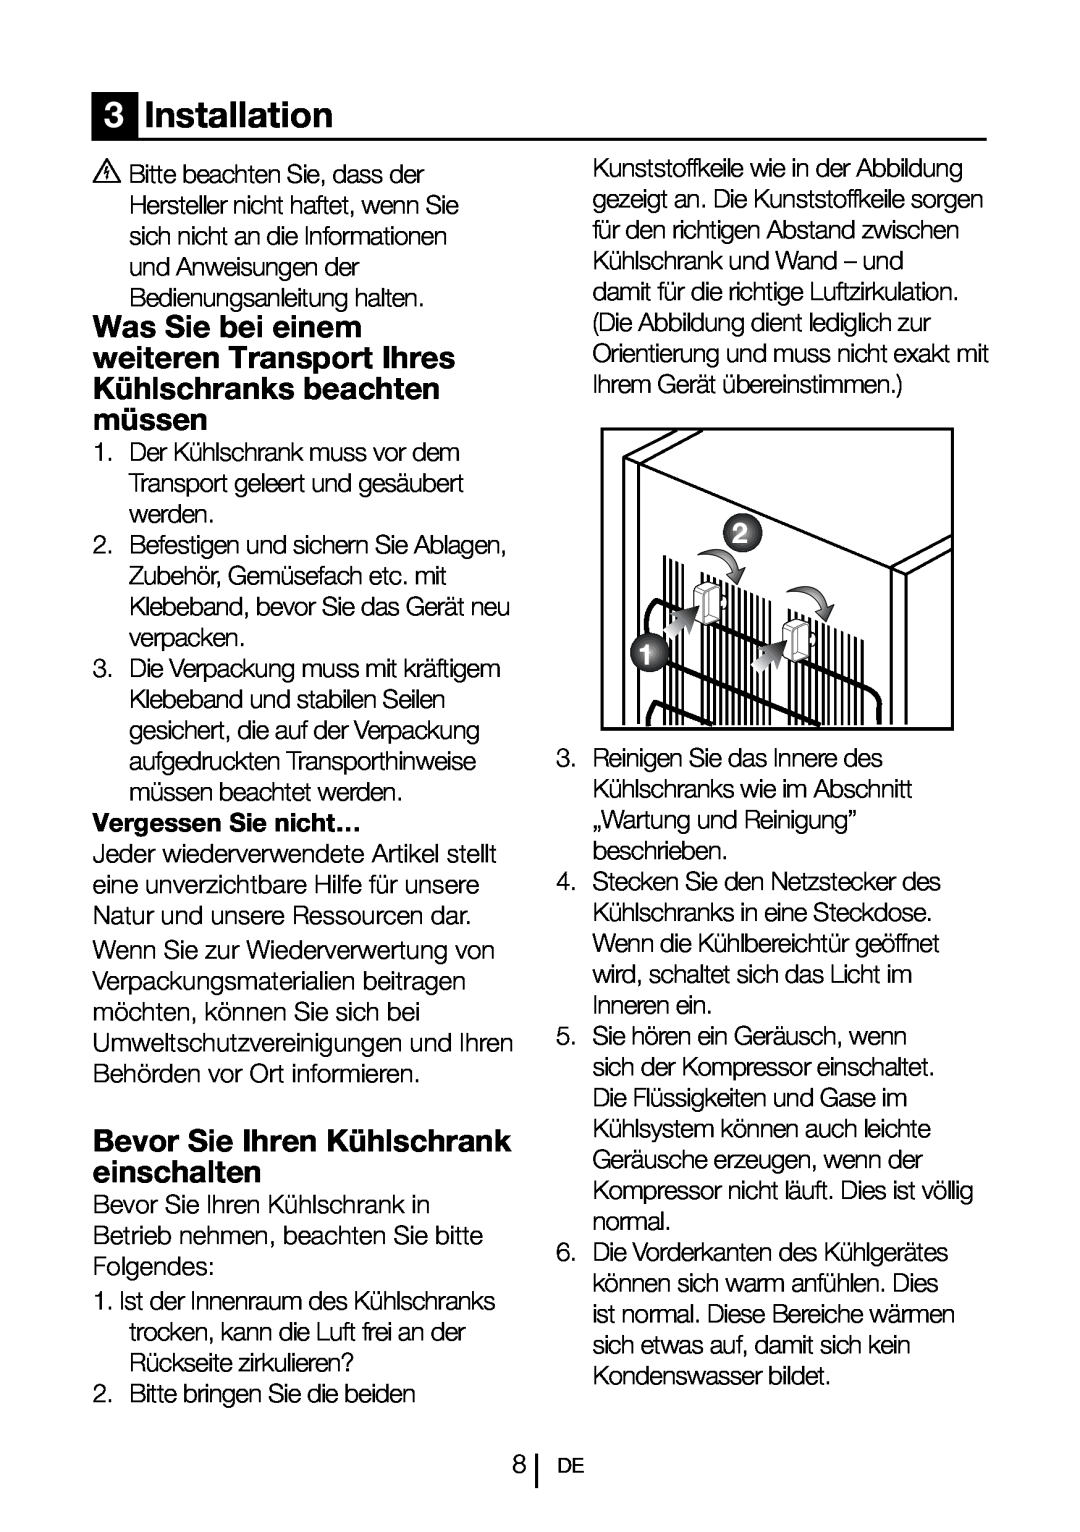 Blomberg SND 9681 XD operating instructions Bevor Sie Ihren Kühlschrank einschalten, Vergessen Sie nicht…, Installation 